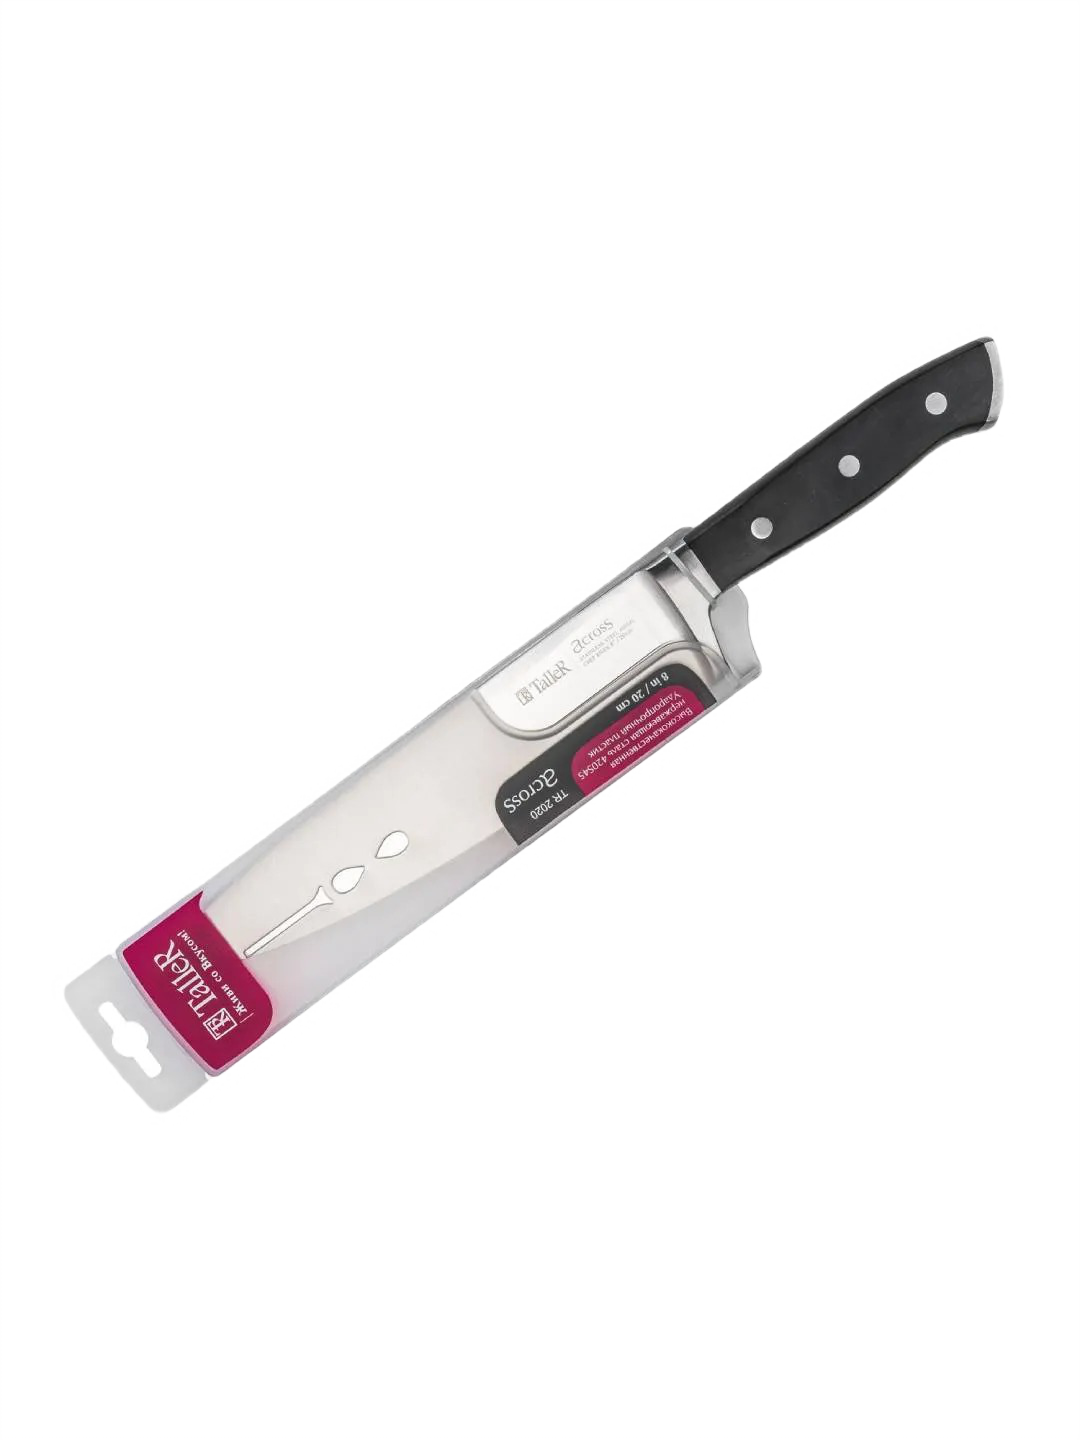 Поварской нож TALLER материал: высококачественная нержавеющая сталь 420S45 TR-22020